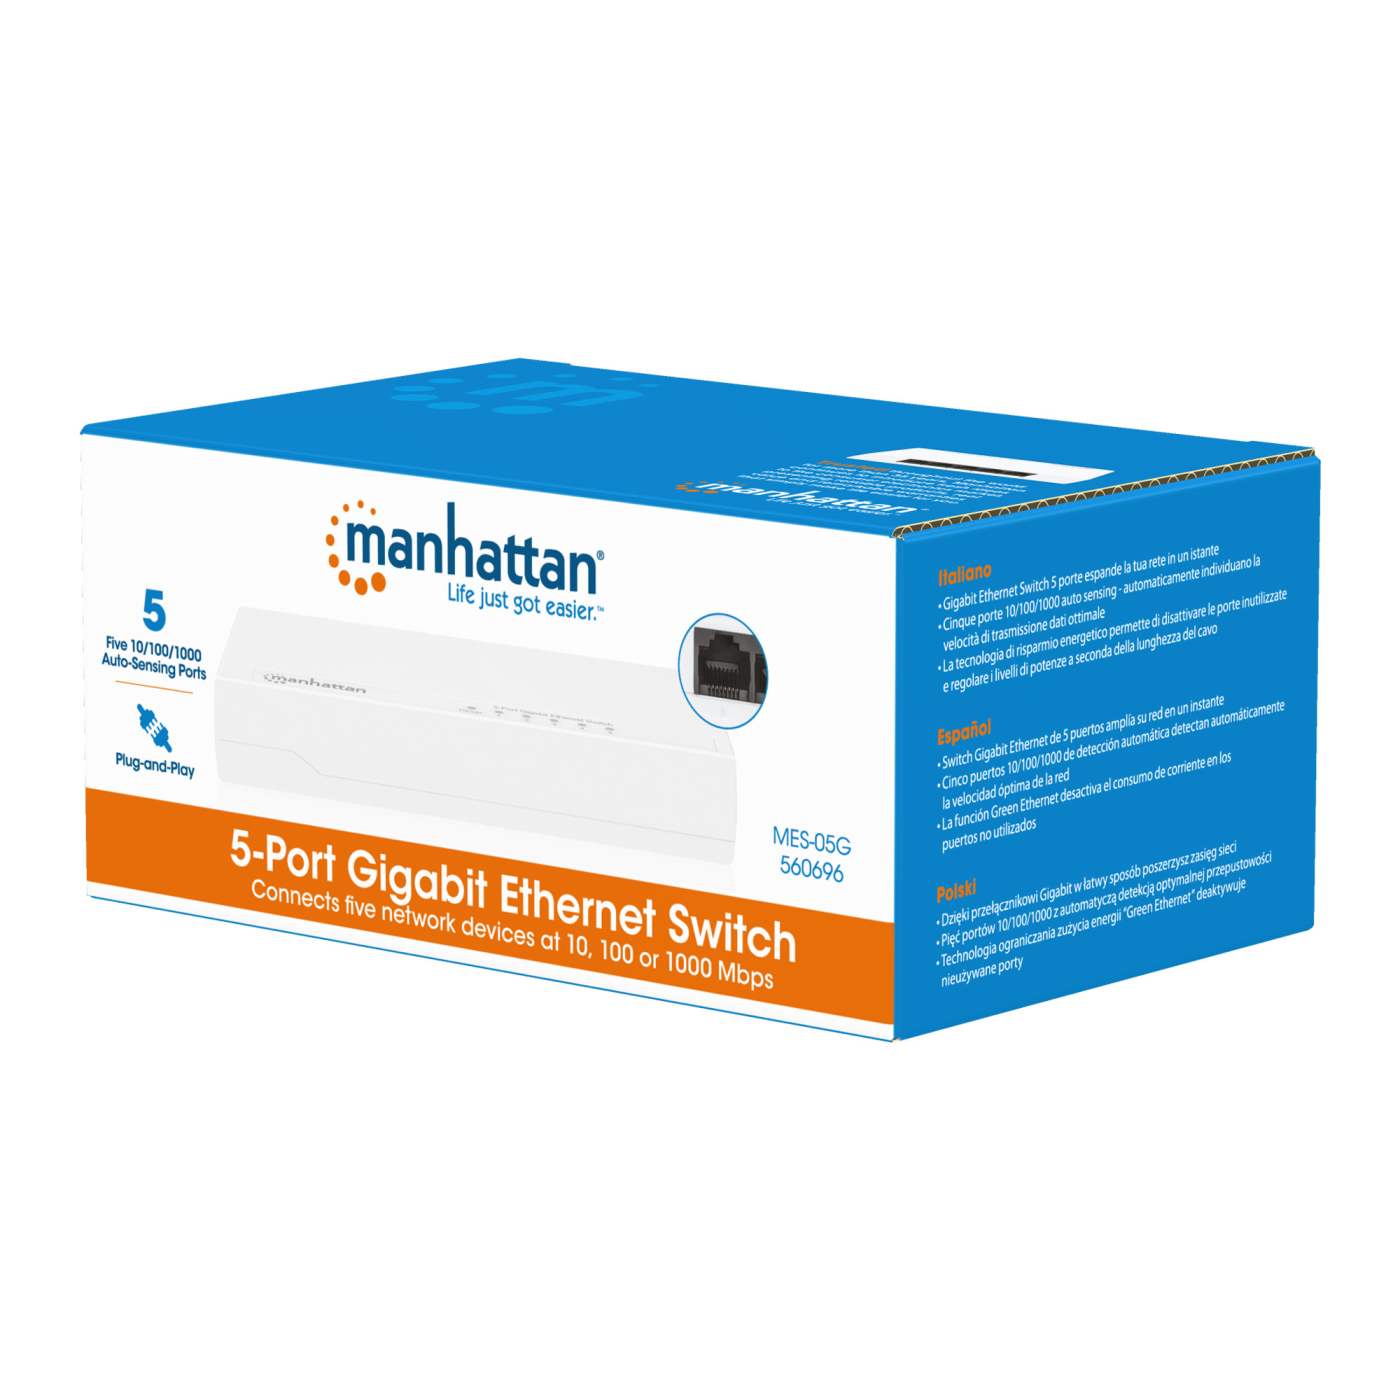 5-Port Gigabit Ethernet Switch Packaging Image 2